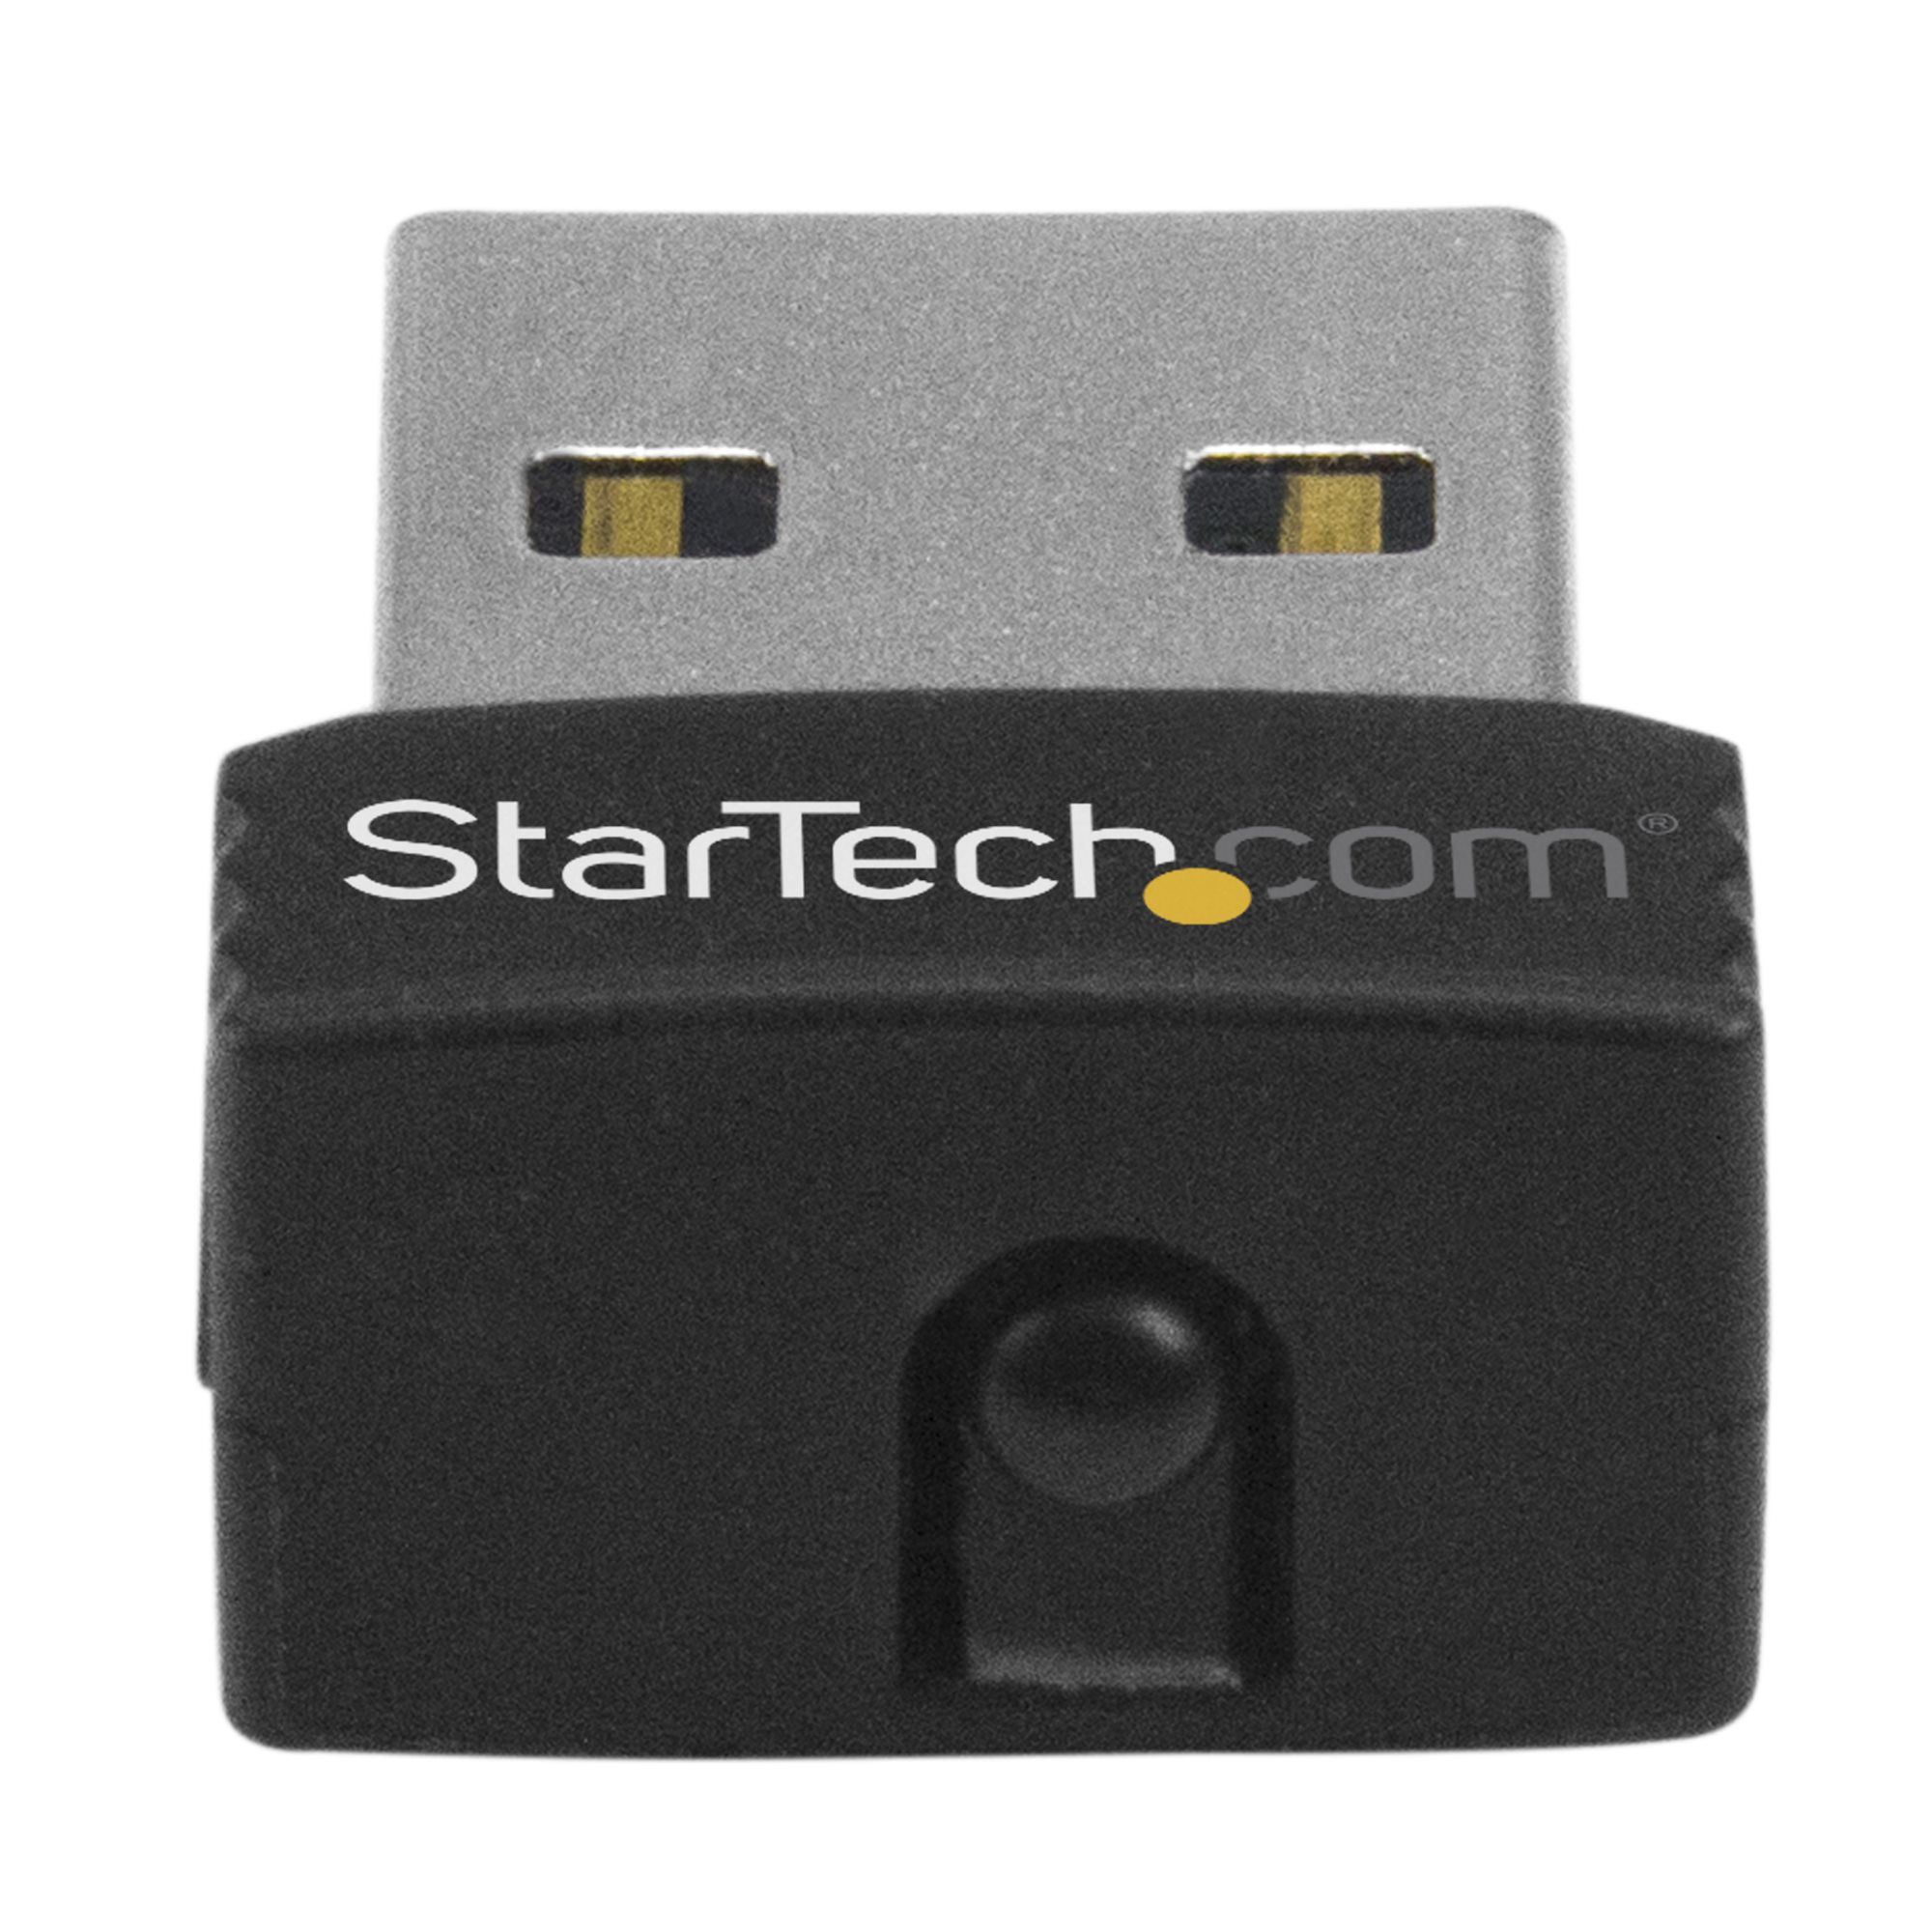 Mini clé USB sans fil 802.11n 150 Mb/s - Adaptateurs réseau sans